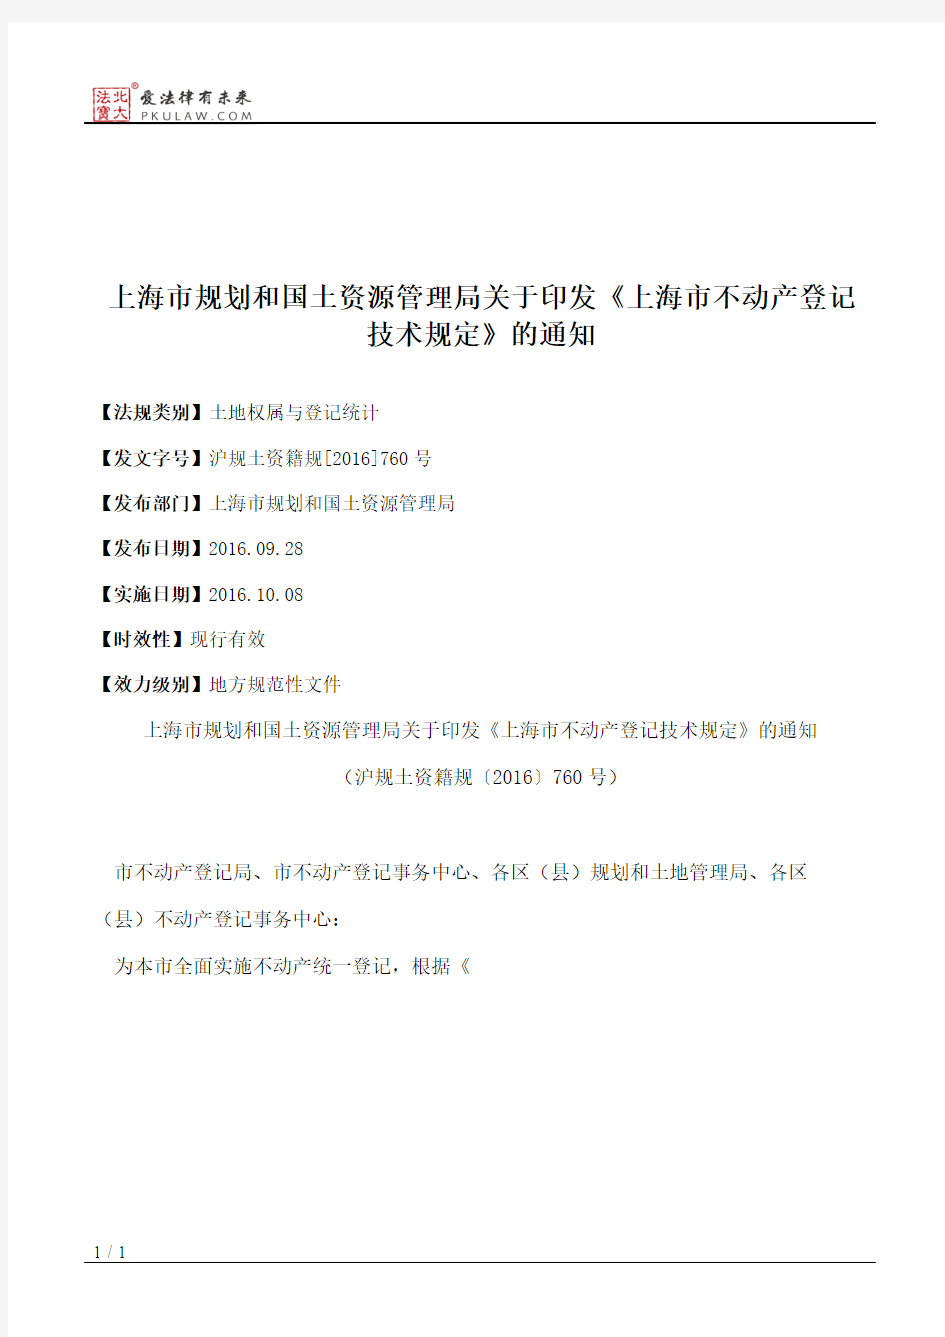 上海市规划和国土资源管理局关于印发《上海市不动产登记技术规定